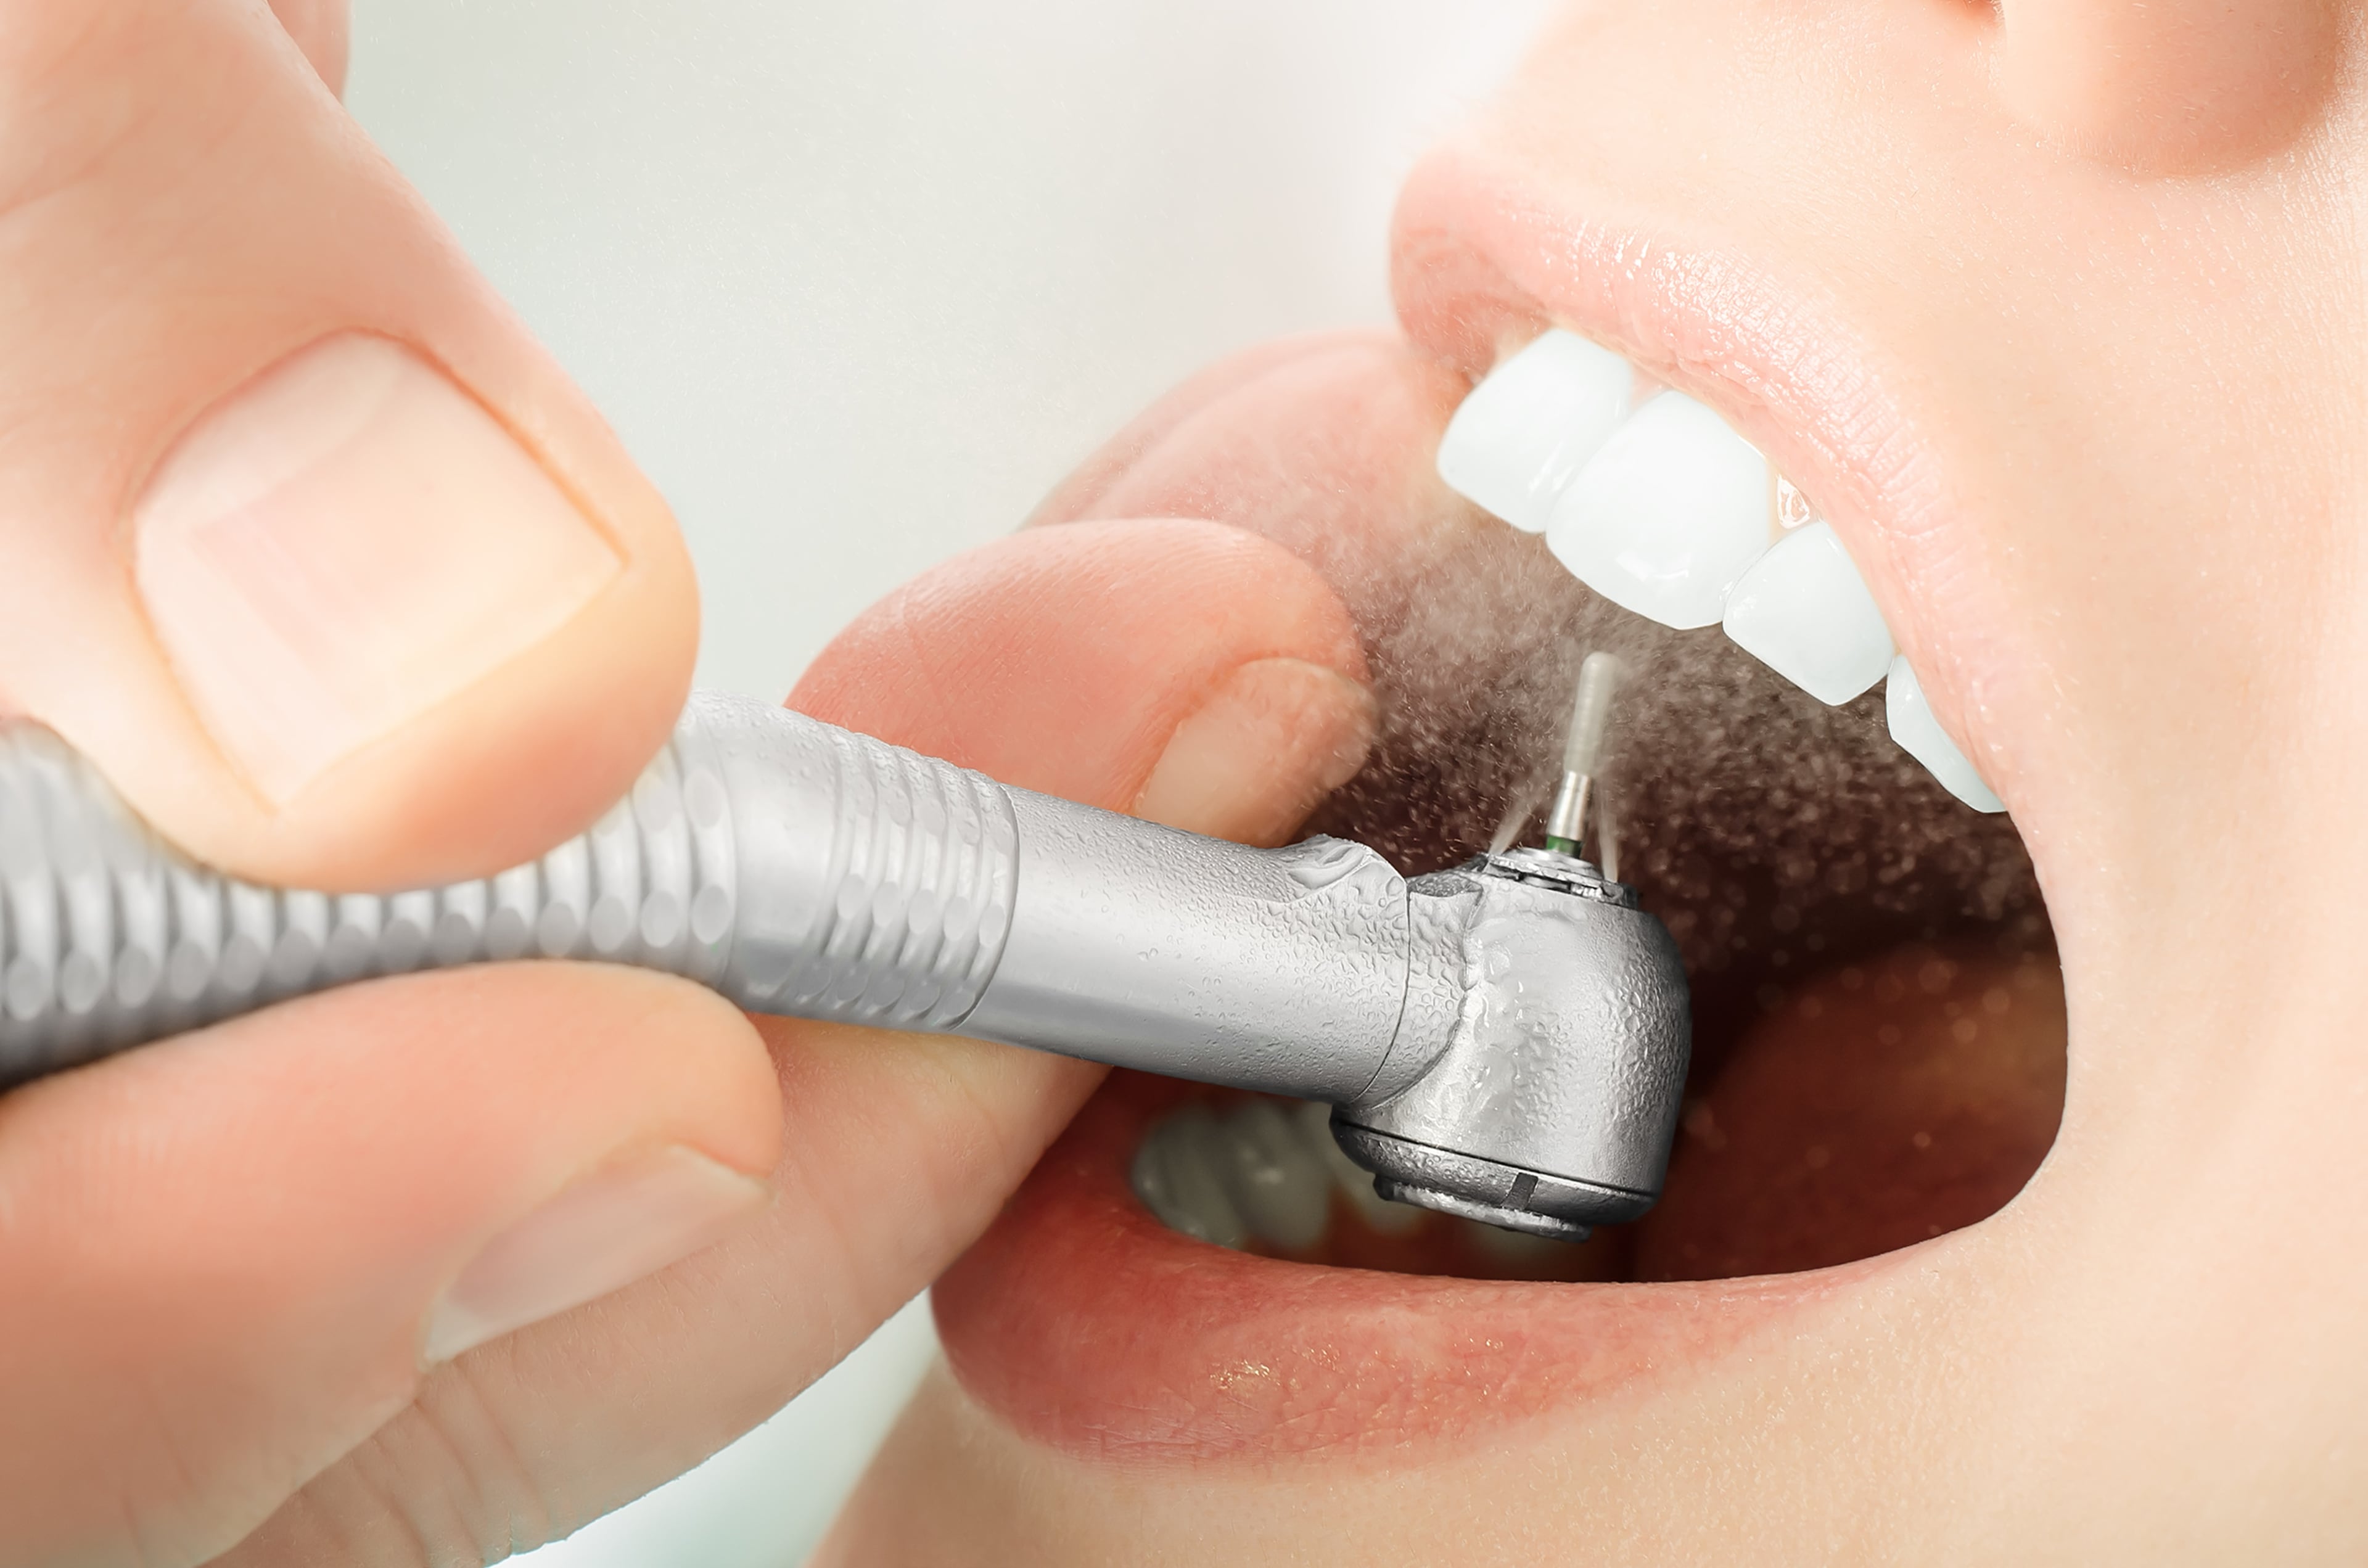 Чистка зубов после лечения. Аппарат АИР флоу стоматология. Профессиональная гигиена полости рта.